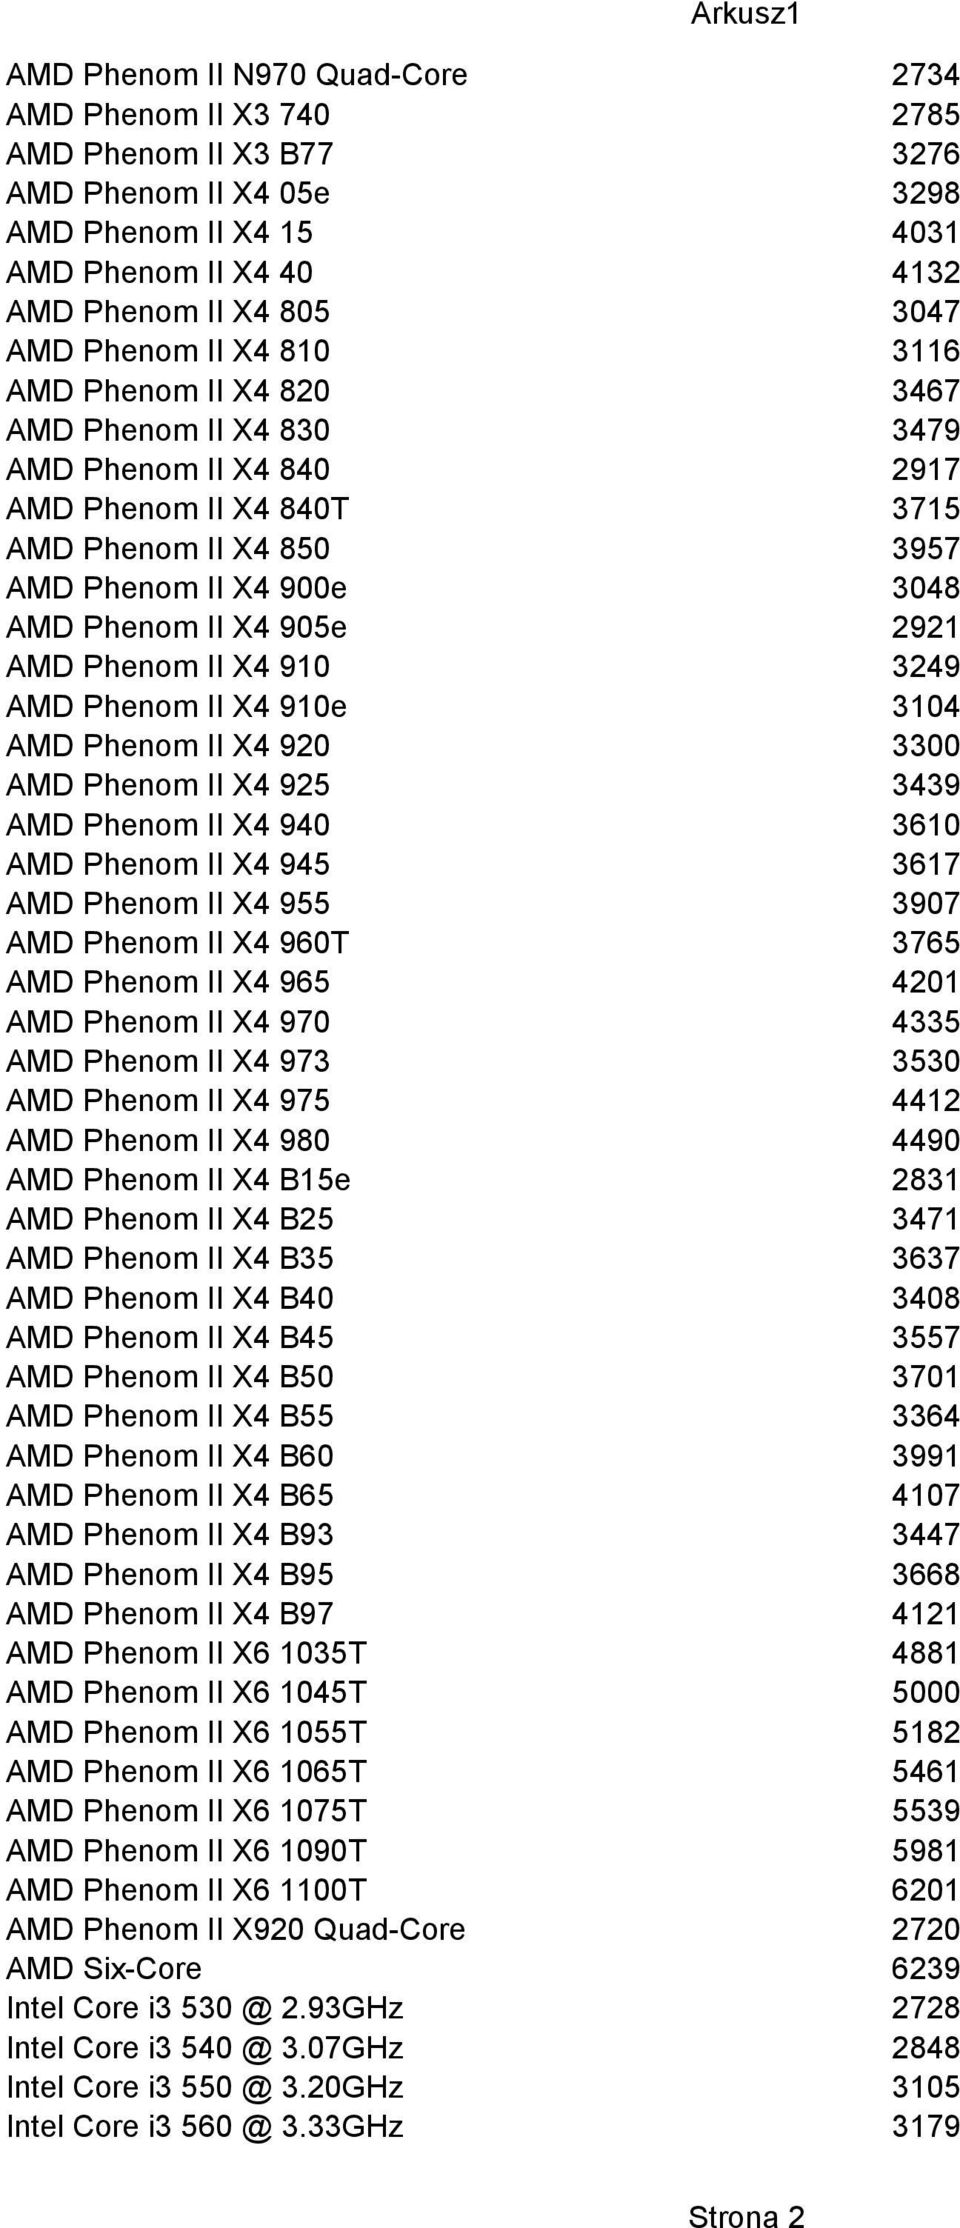 AMD Phenom II X4 910 3249 AMD Phenom II X4 910e 3104 AMD Phenom II X4 920 3300 AMD Phenom II X4 925 3439 AMD Phenom II X4 940 3610 AMD Phenom II X4 945 3617 AMD Phenom II X4 955 3907 AMD Phenom II X4